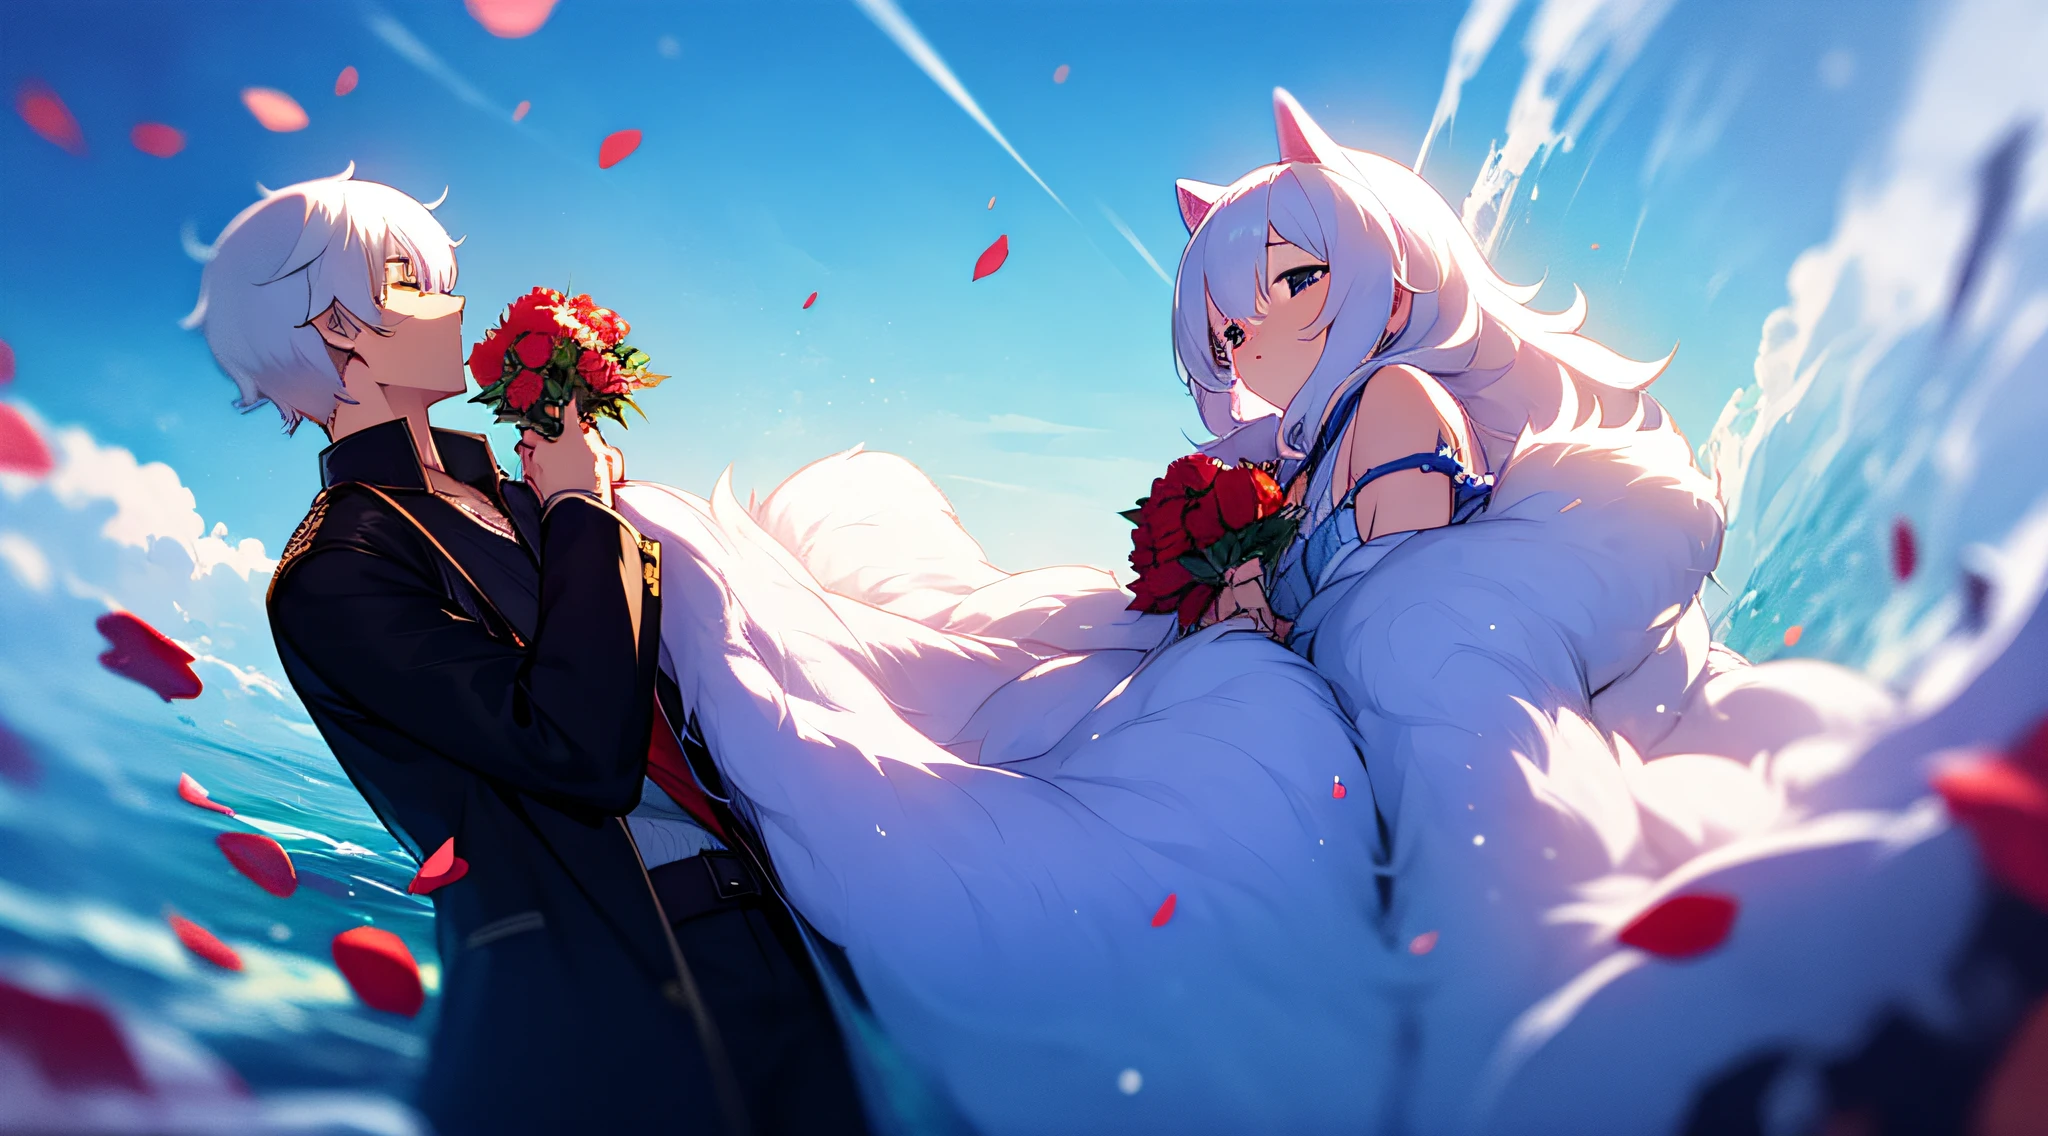 Sie ist eine Frau, er trägt jK und hält Rosen in der Hand, hinter ihm ist das Meer, blauer Himmel, und sie trägt Katzen